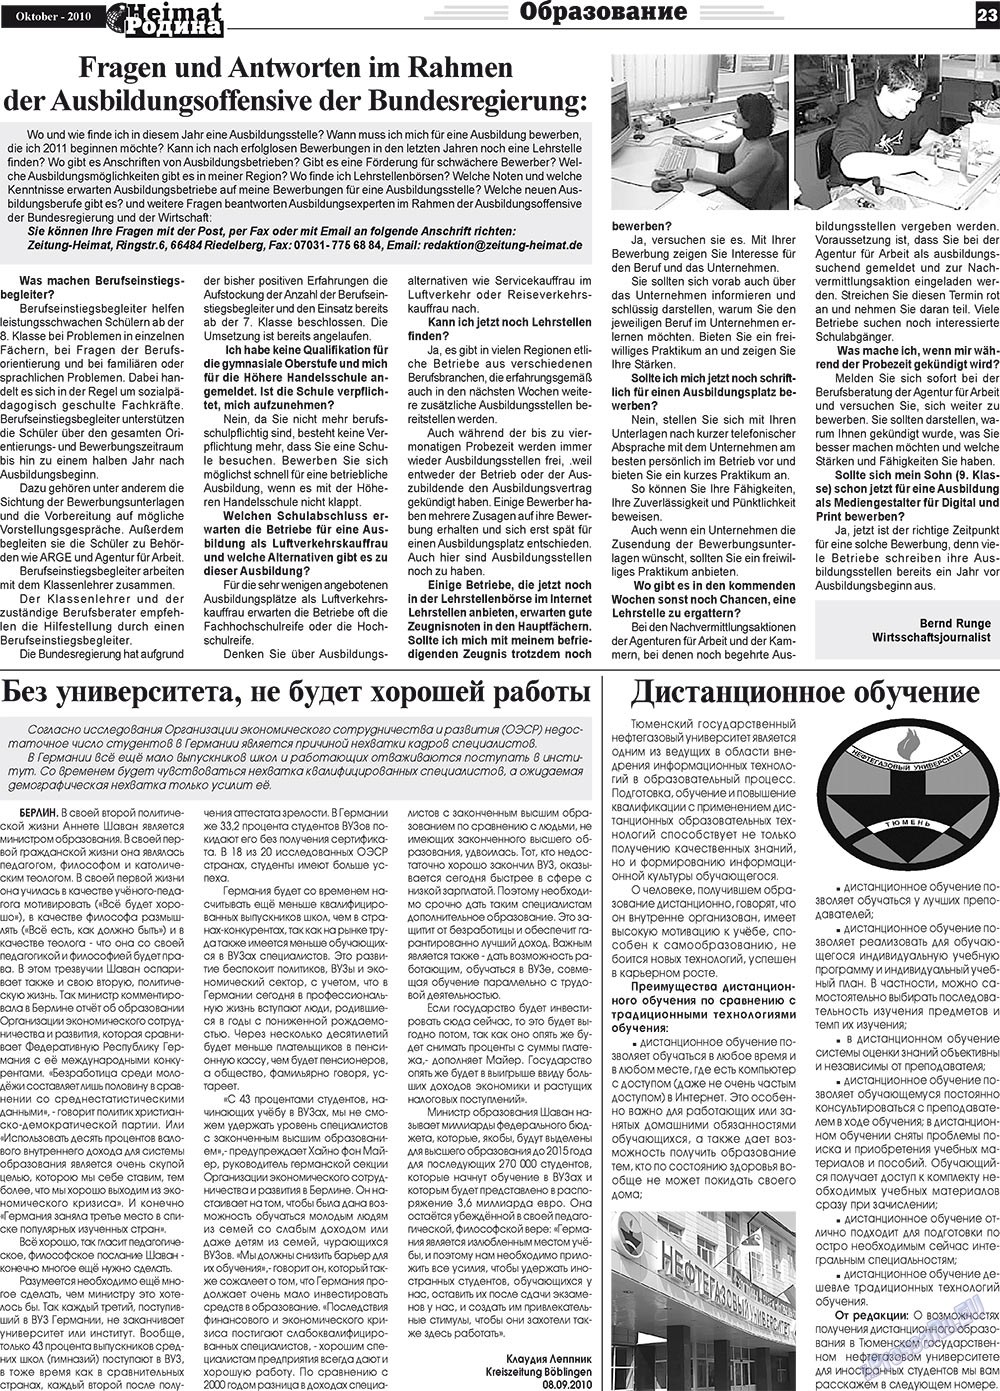 Heimat-Родина (газета). 2010 год, номер 10, стр. 23